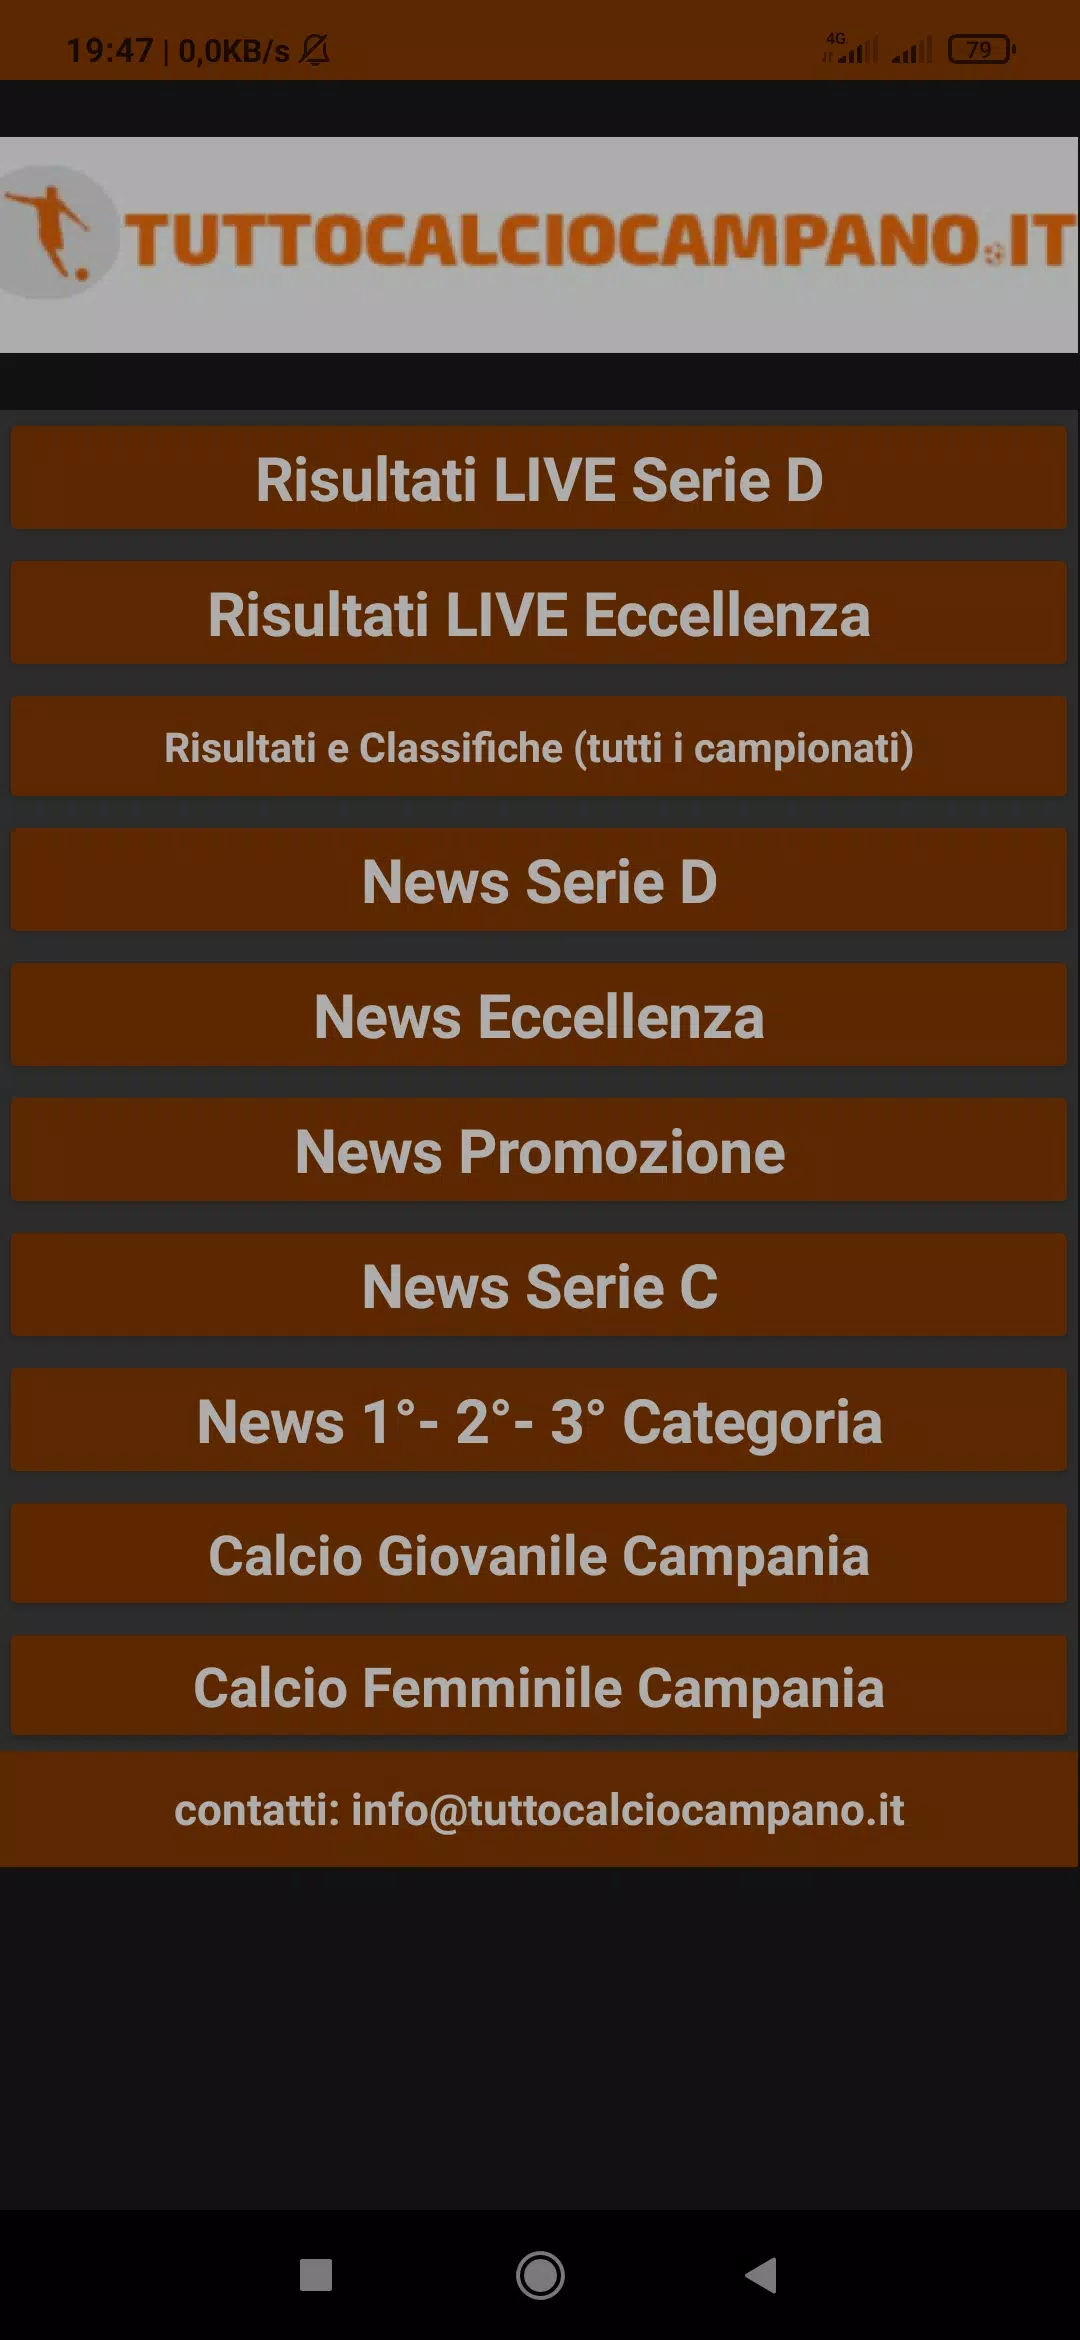 Tutto Calcio Campano for Android - APK Download